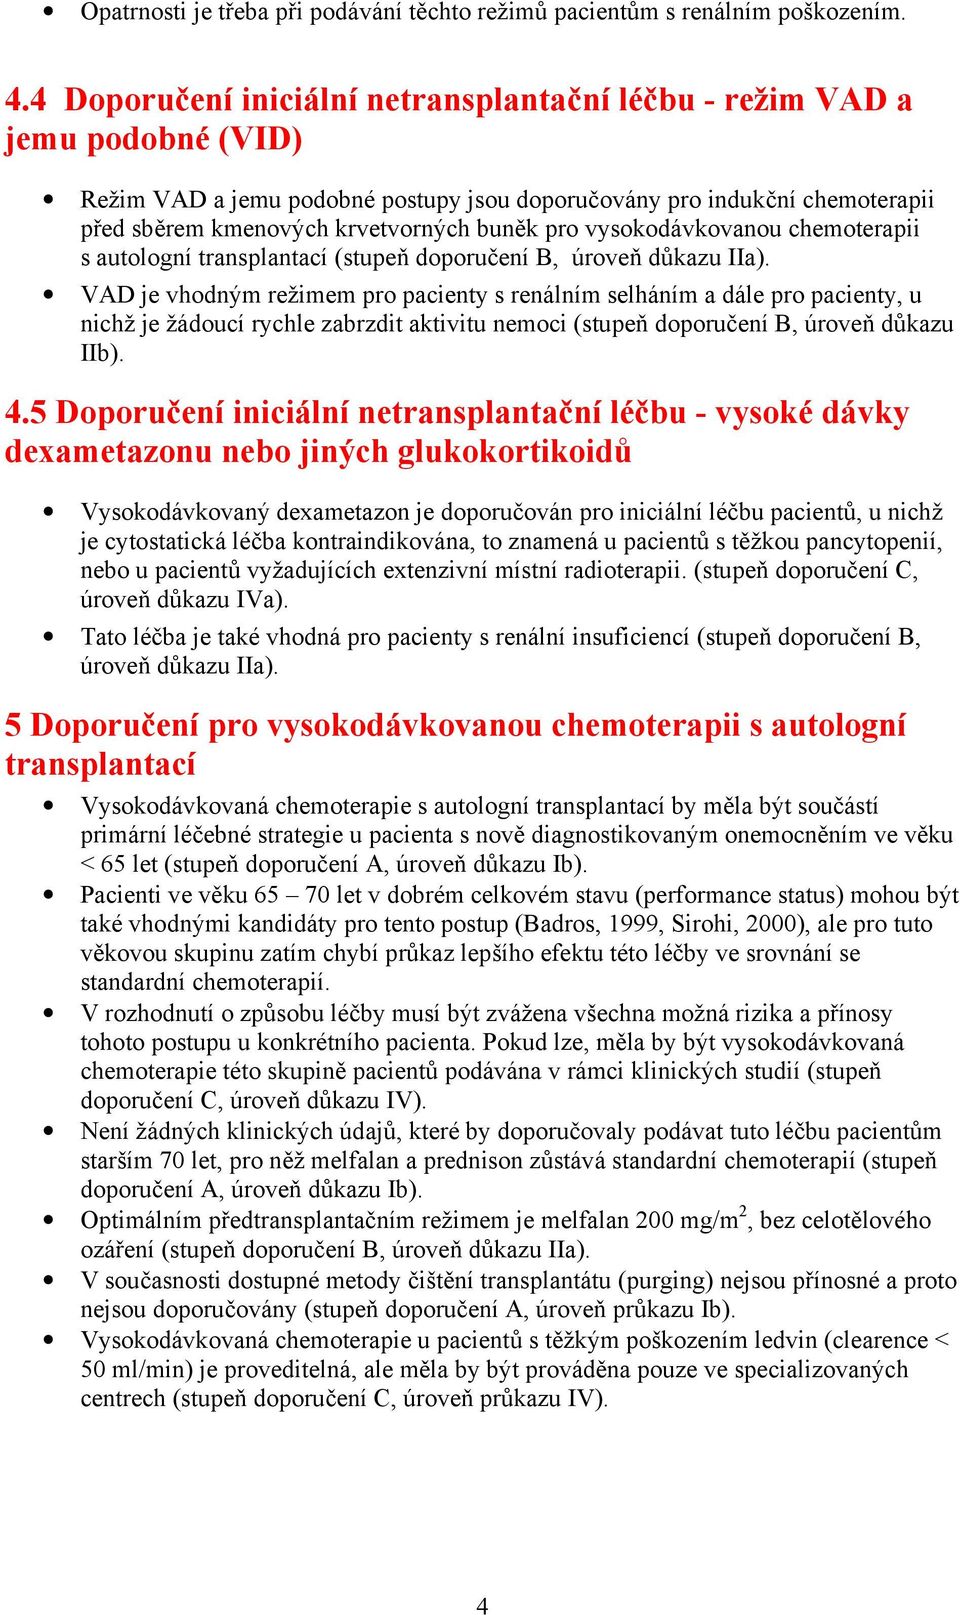 pro vysokodávkovanou chemoterapii s autologní transplantací (stupeň doporučení B, úroveň důkazu IIa).